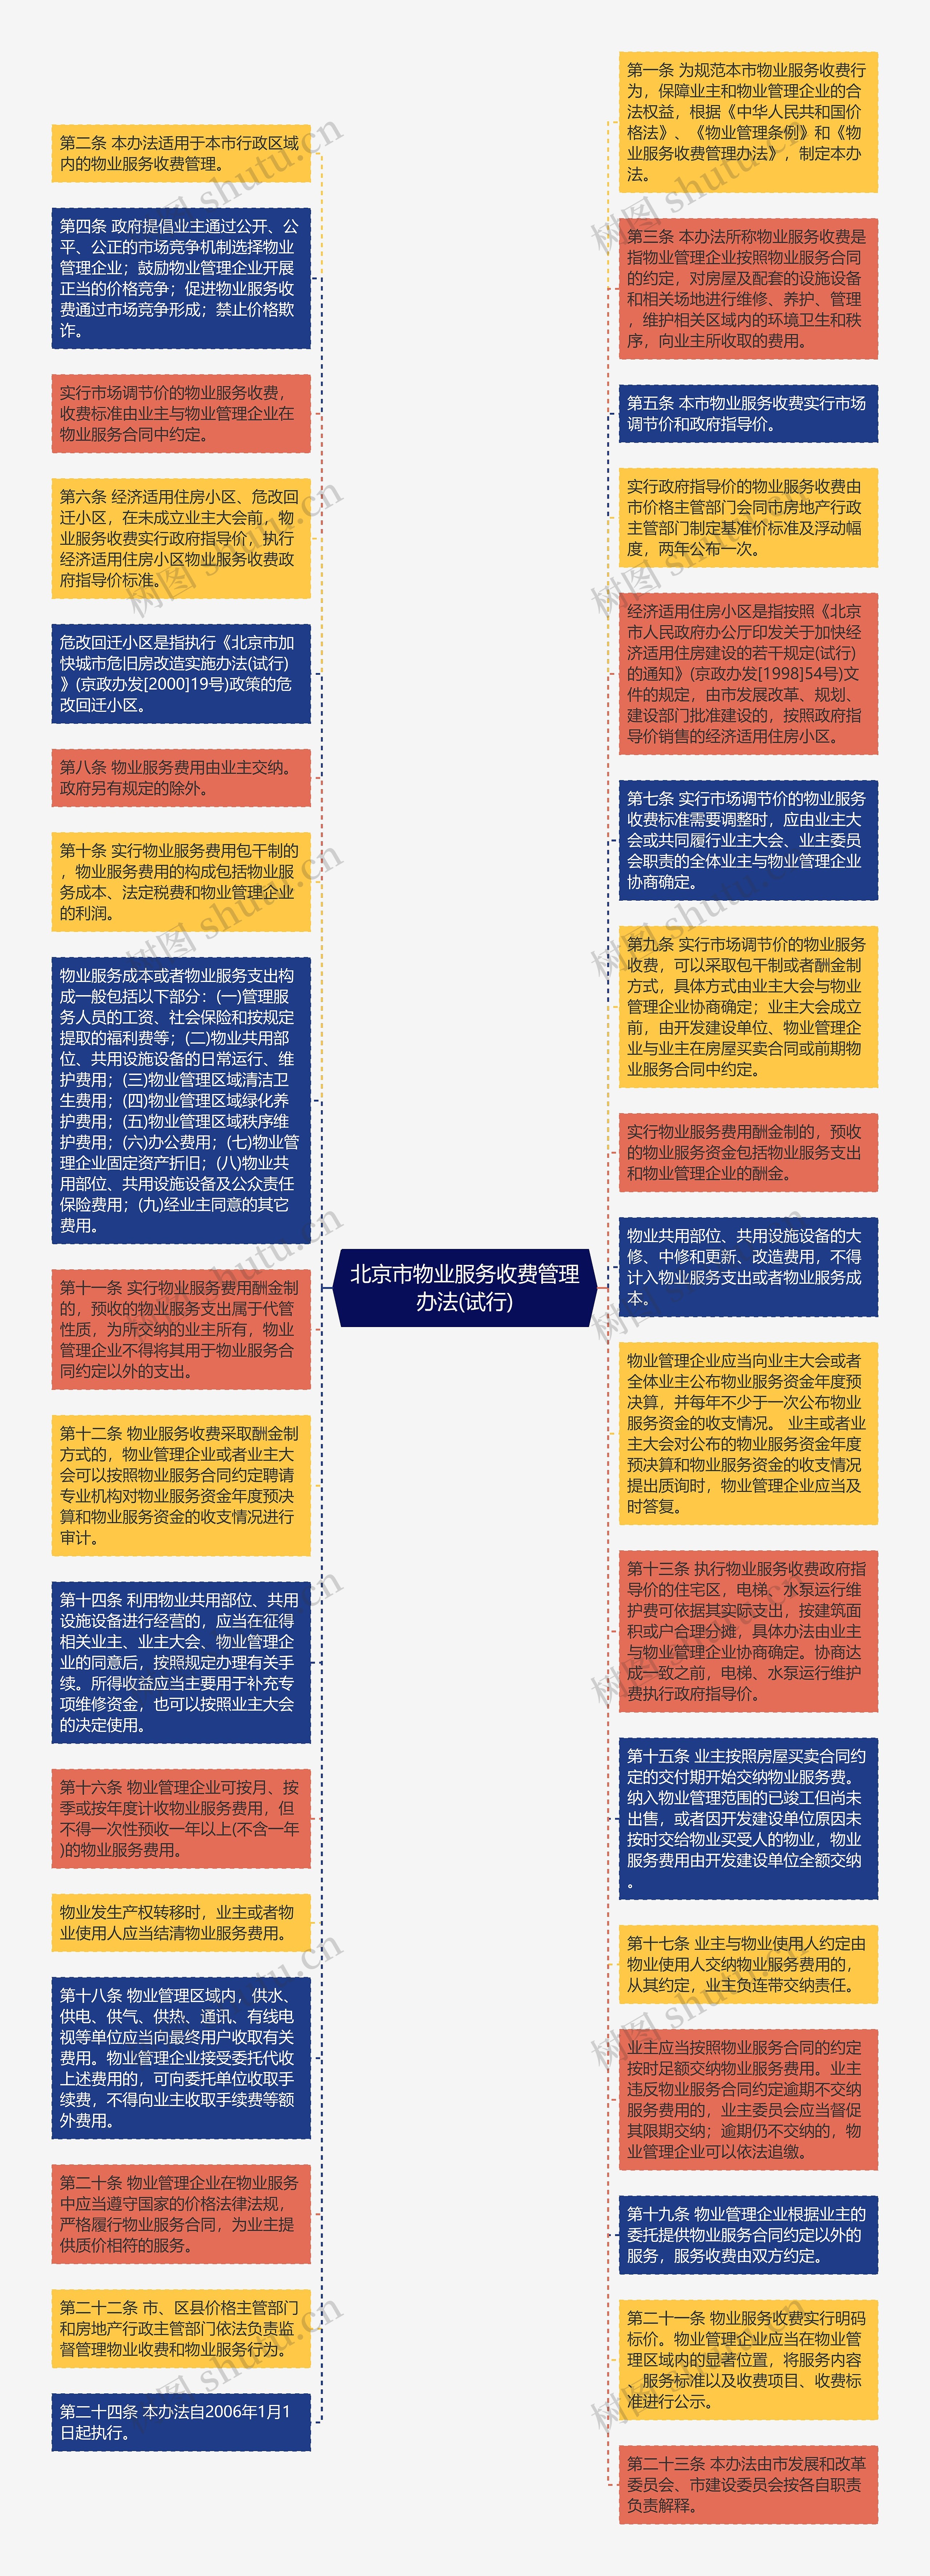 北京市物业服务收费管理办法(试行)